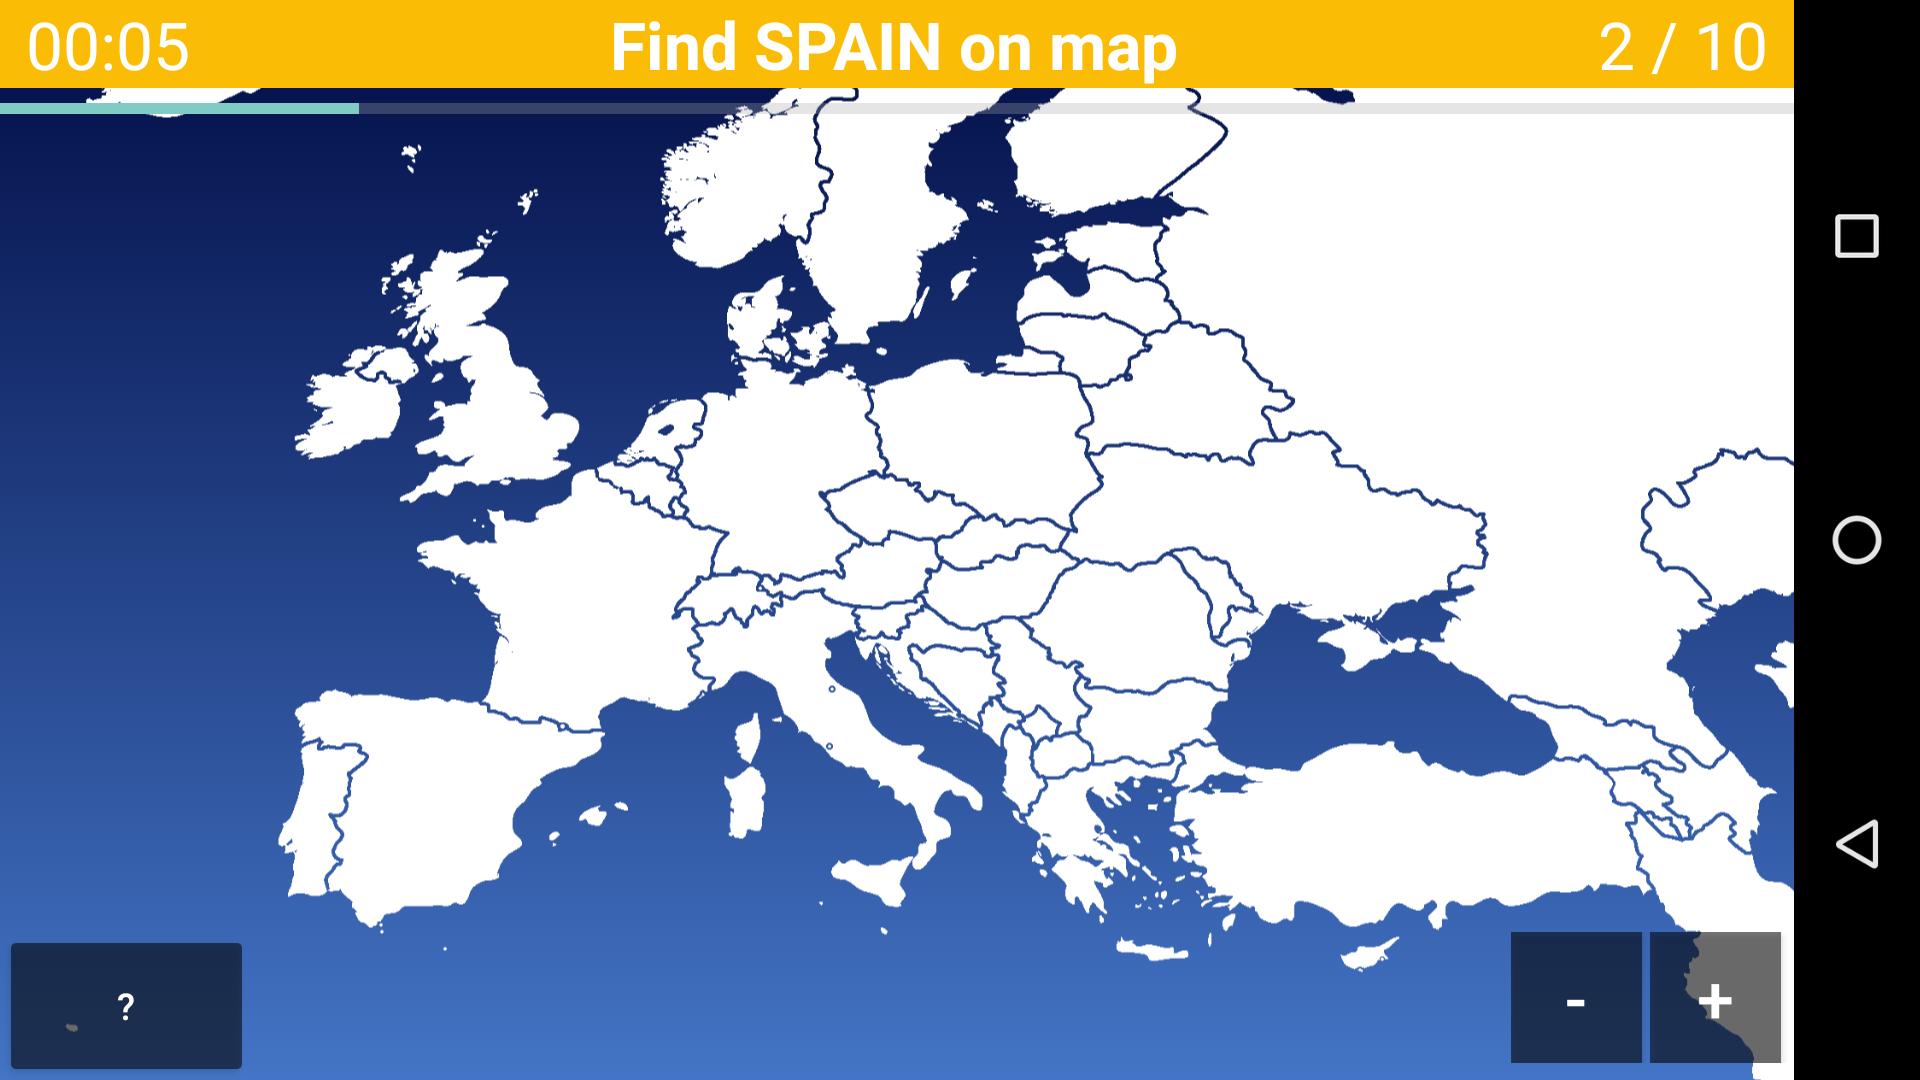 Quiz Państwa I Stolice Europy Quiz na mapie Europy - Kraje i stolice Europy for Android - APK Download